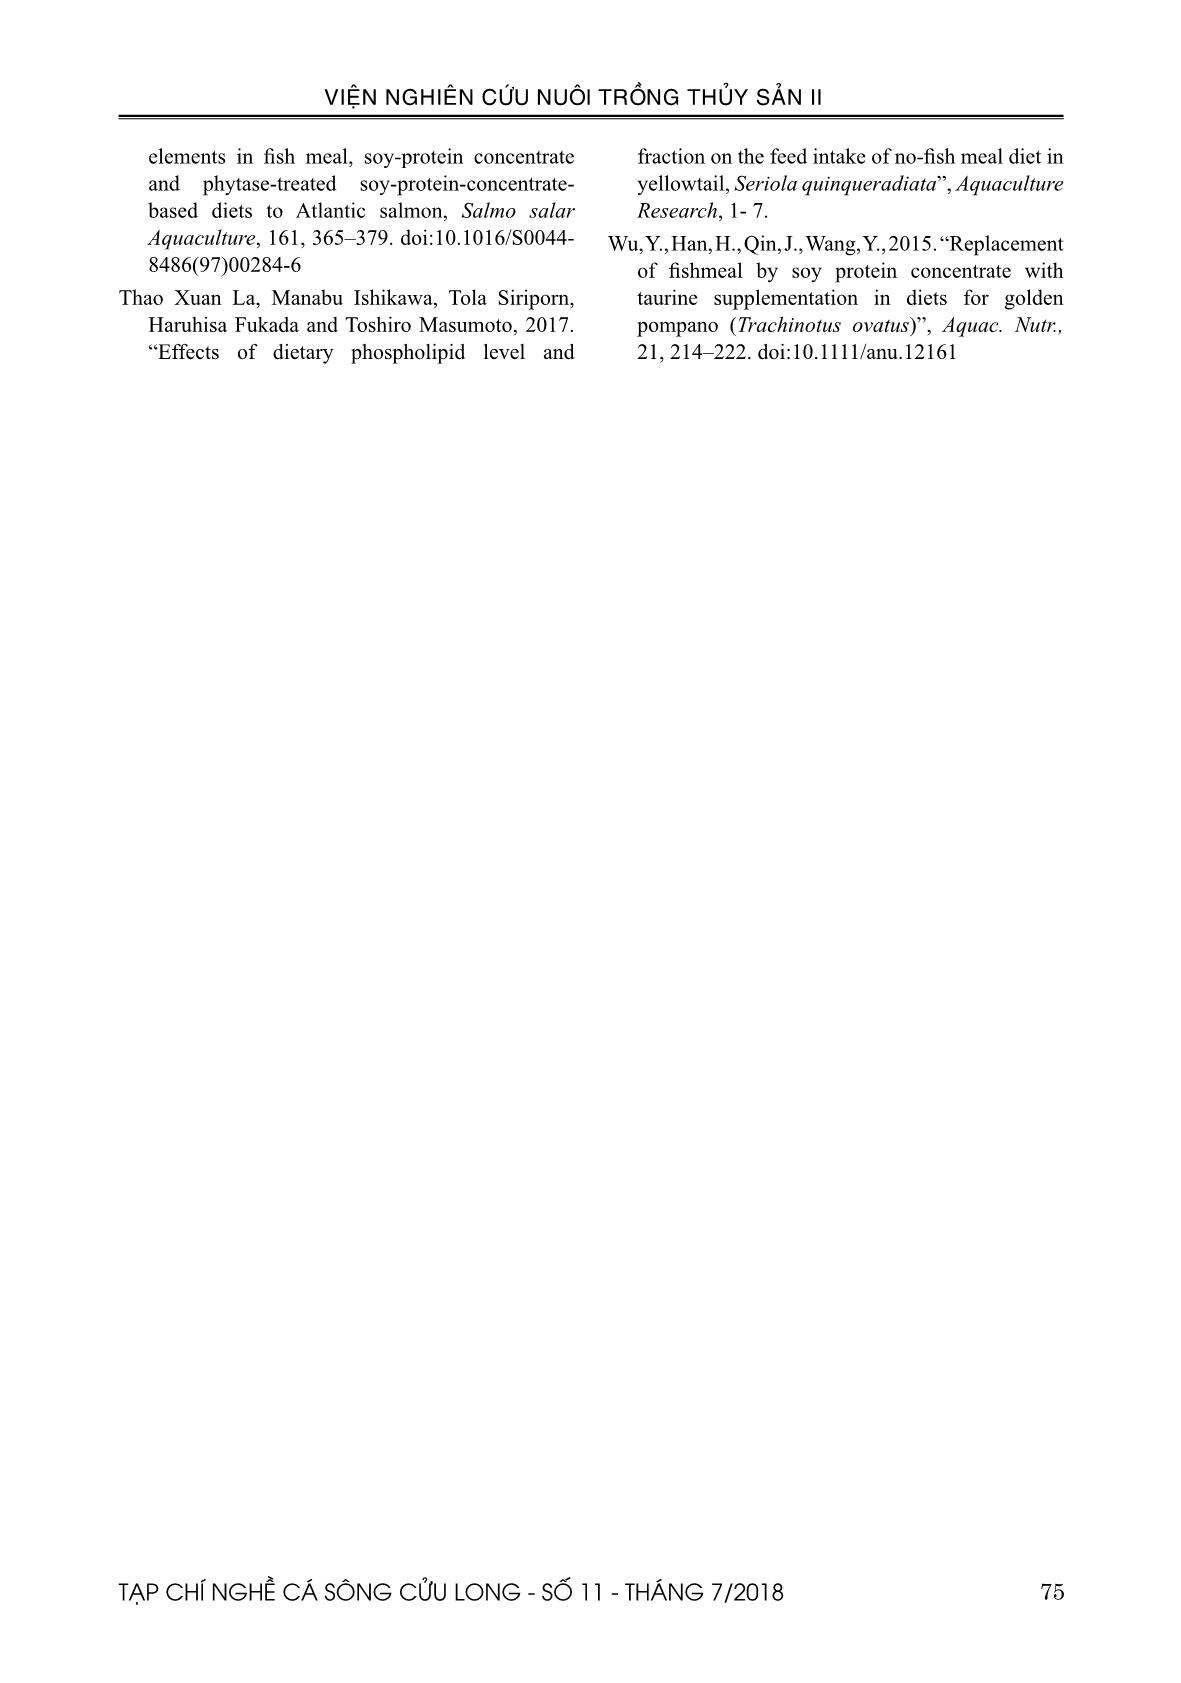 Ảnh hưởng của Soy protein concentrate (SPC) tới enzyme tiêu hóa của cá cam Nhật Bản (Seriola quinqueradiata Temminck & Schlegel, 1845) trang 9